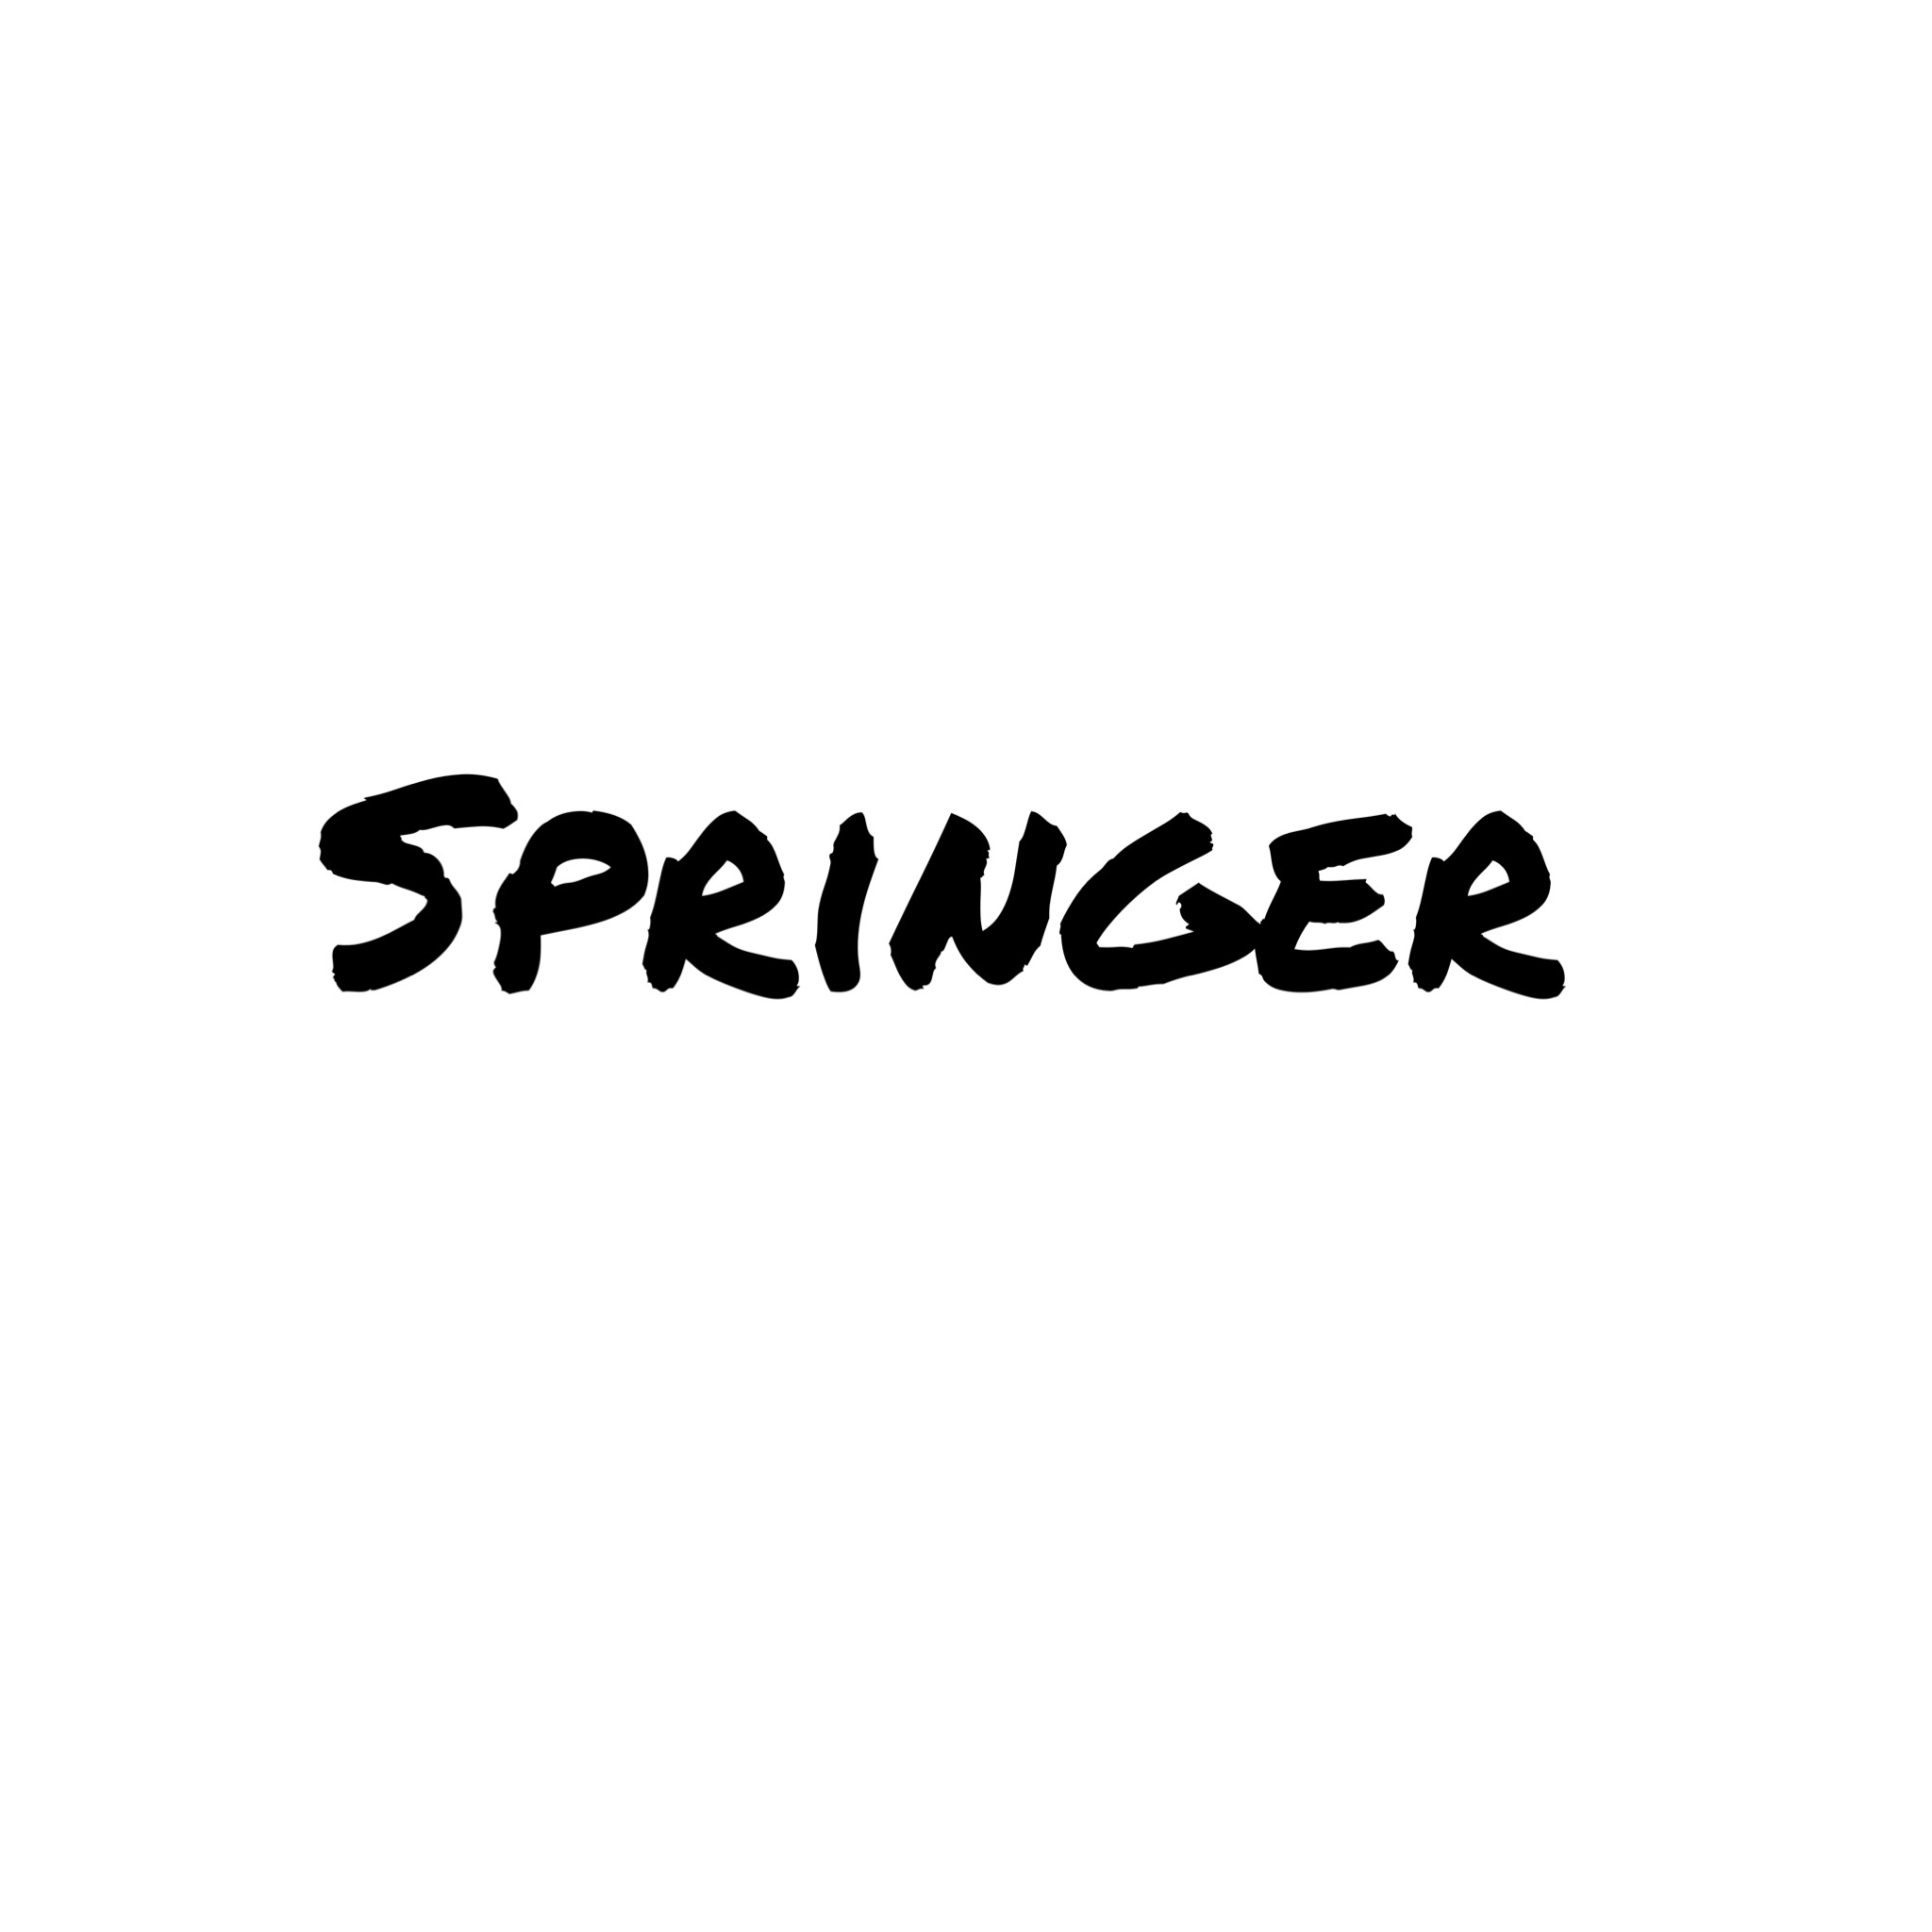 डाउनलोड करा Springer